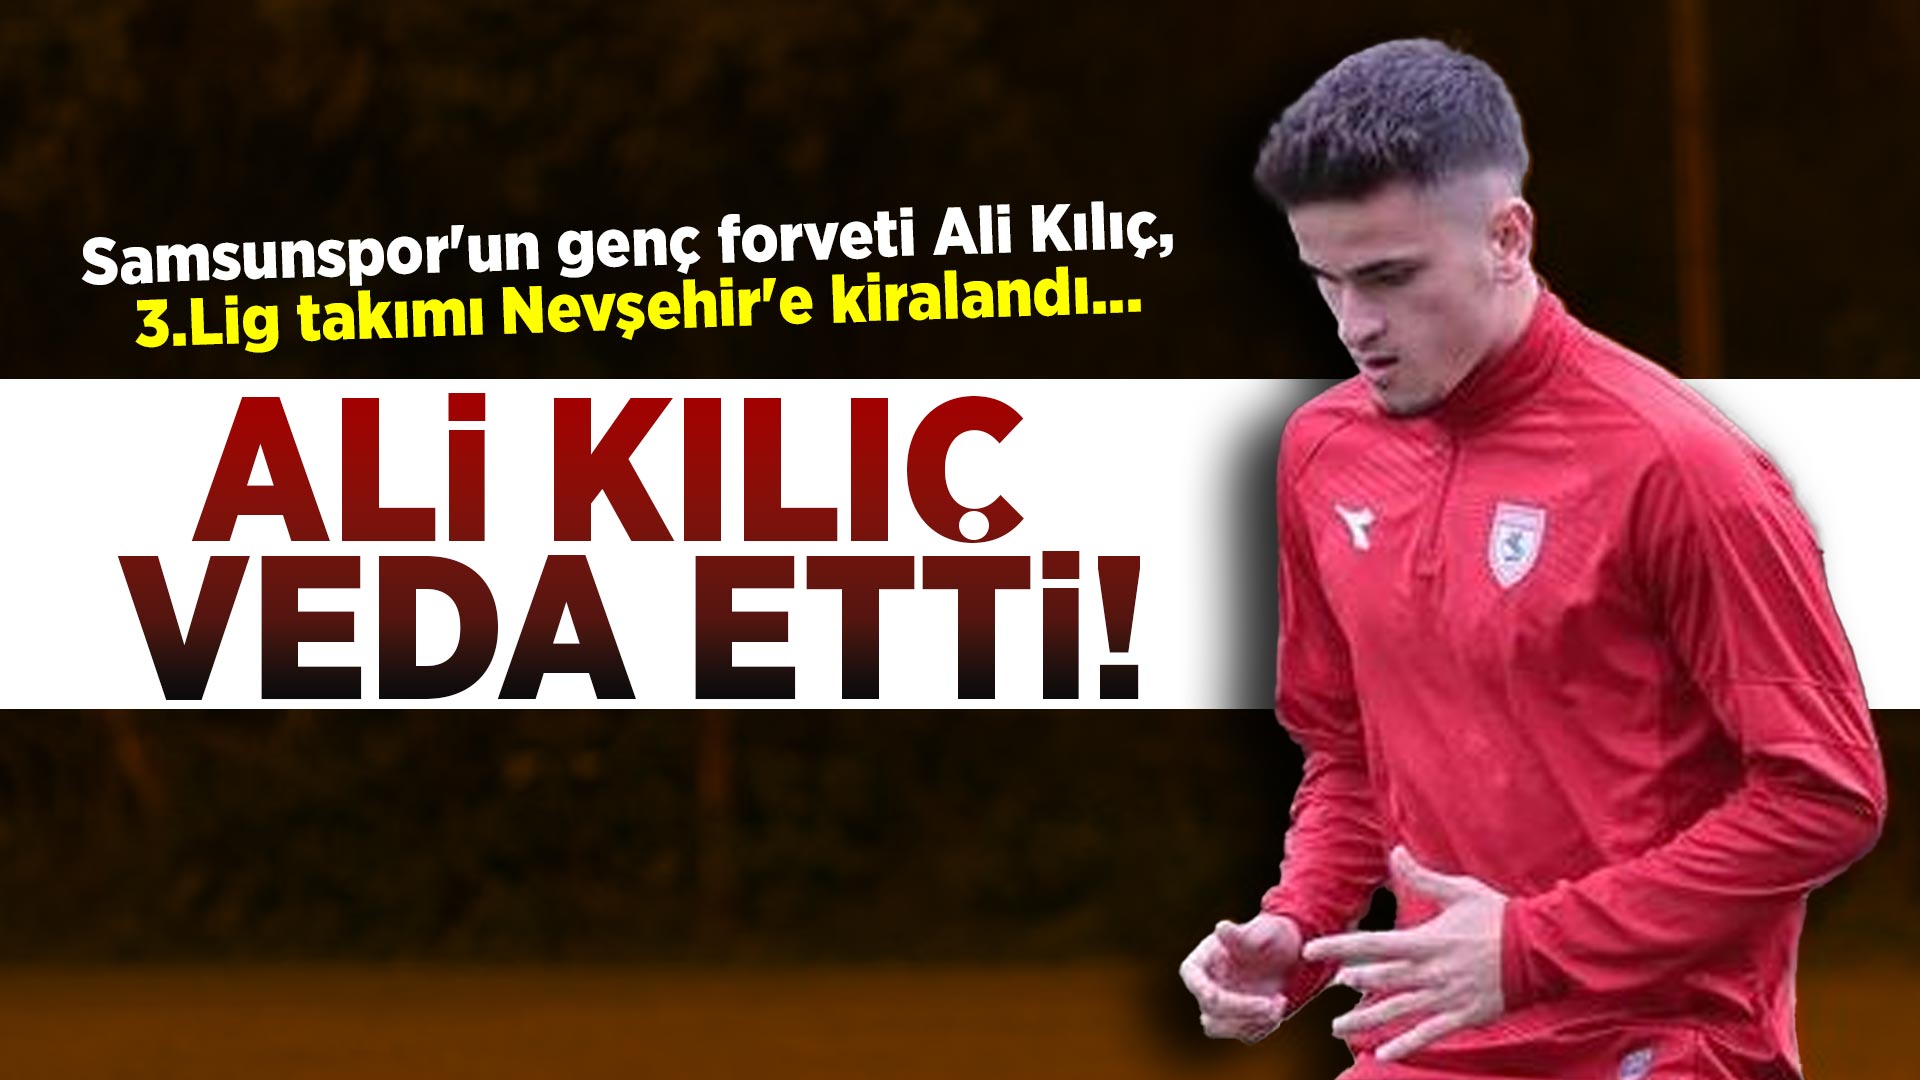 Ali Kılıç Veda Etti! Samsunspor'un genç forveti Ali Kılıç, 3.Lig takımı Nevşehir'e kiralandı...